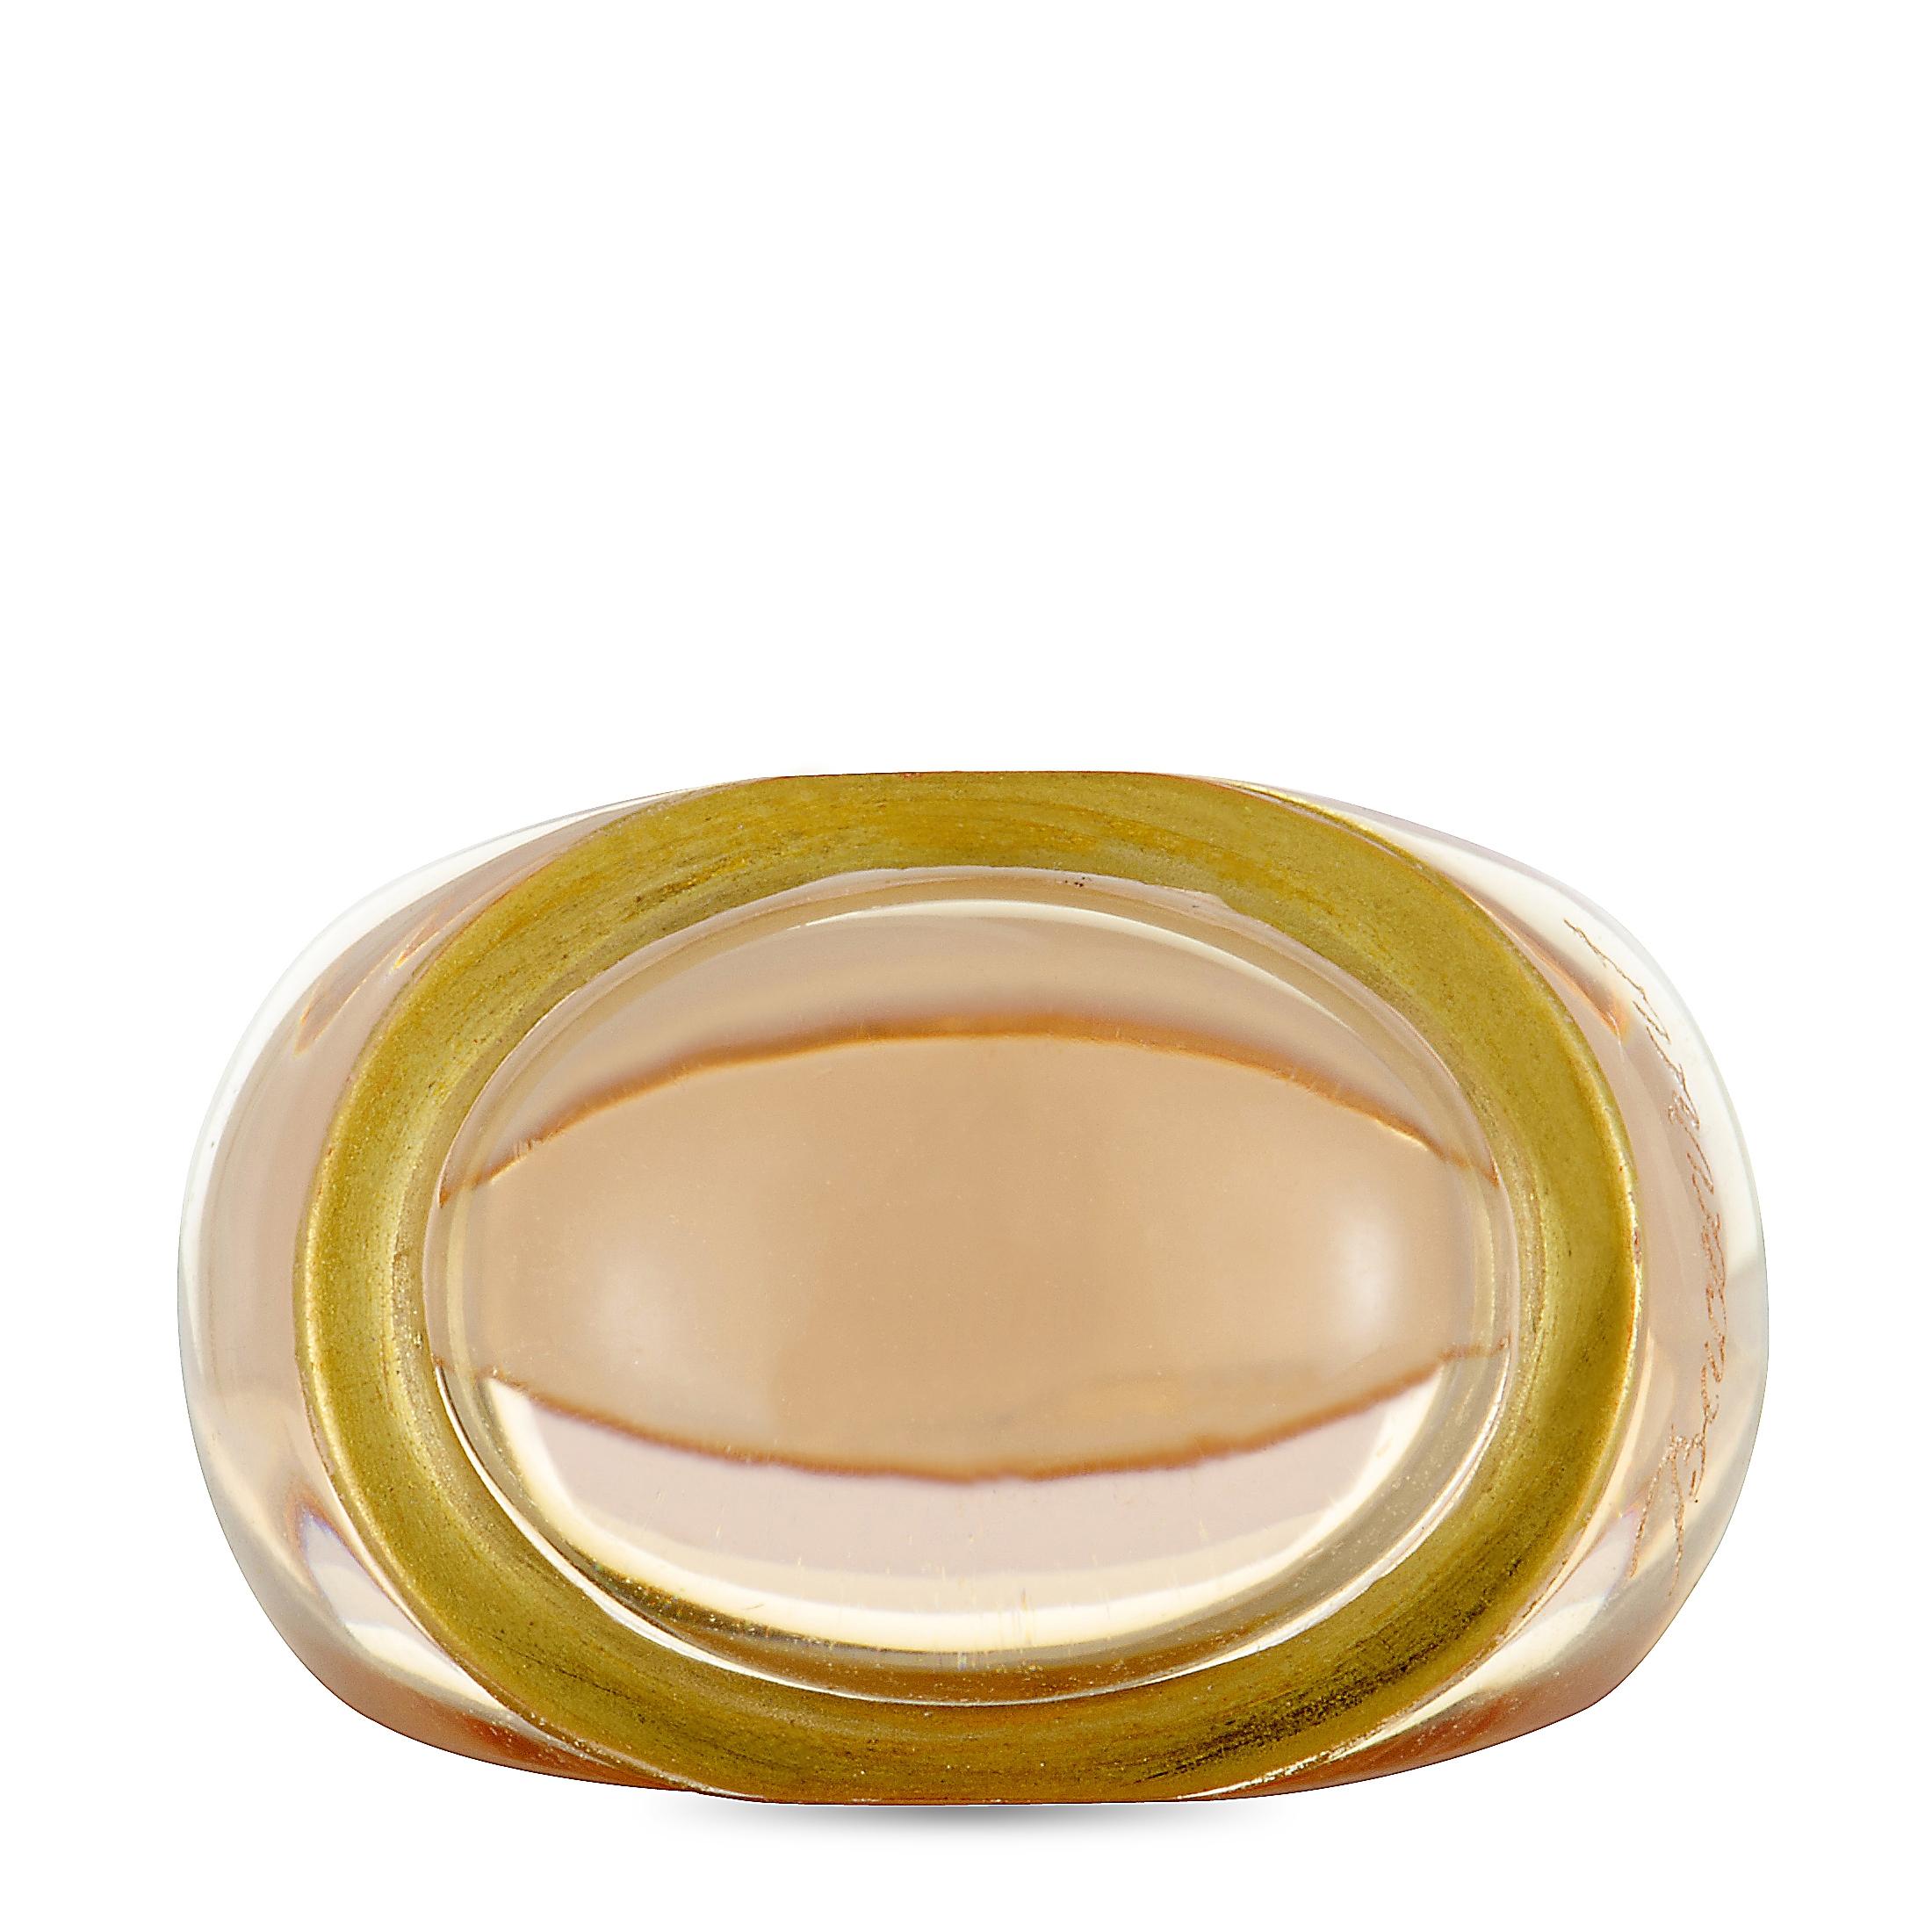 Women's Baccarat 18 Karat Yellow Gold Crystal Ring